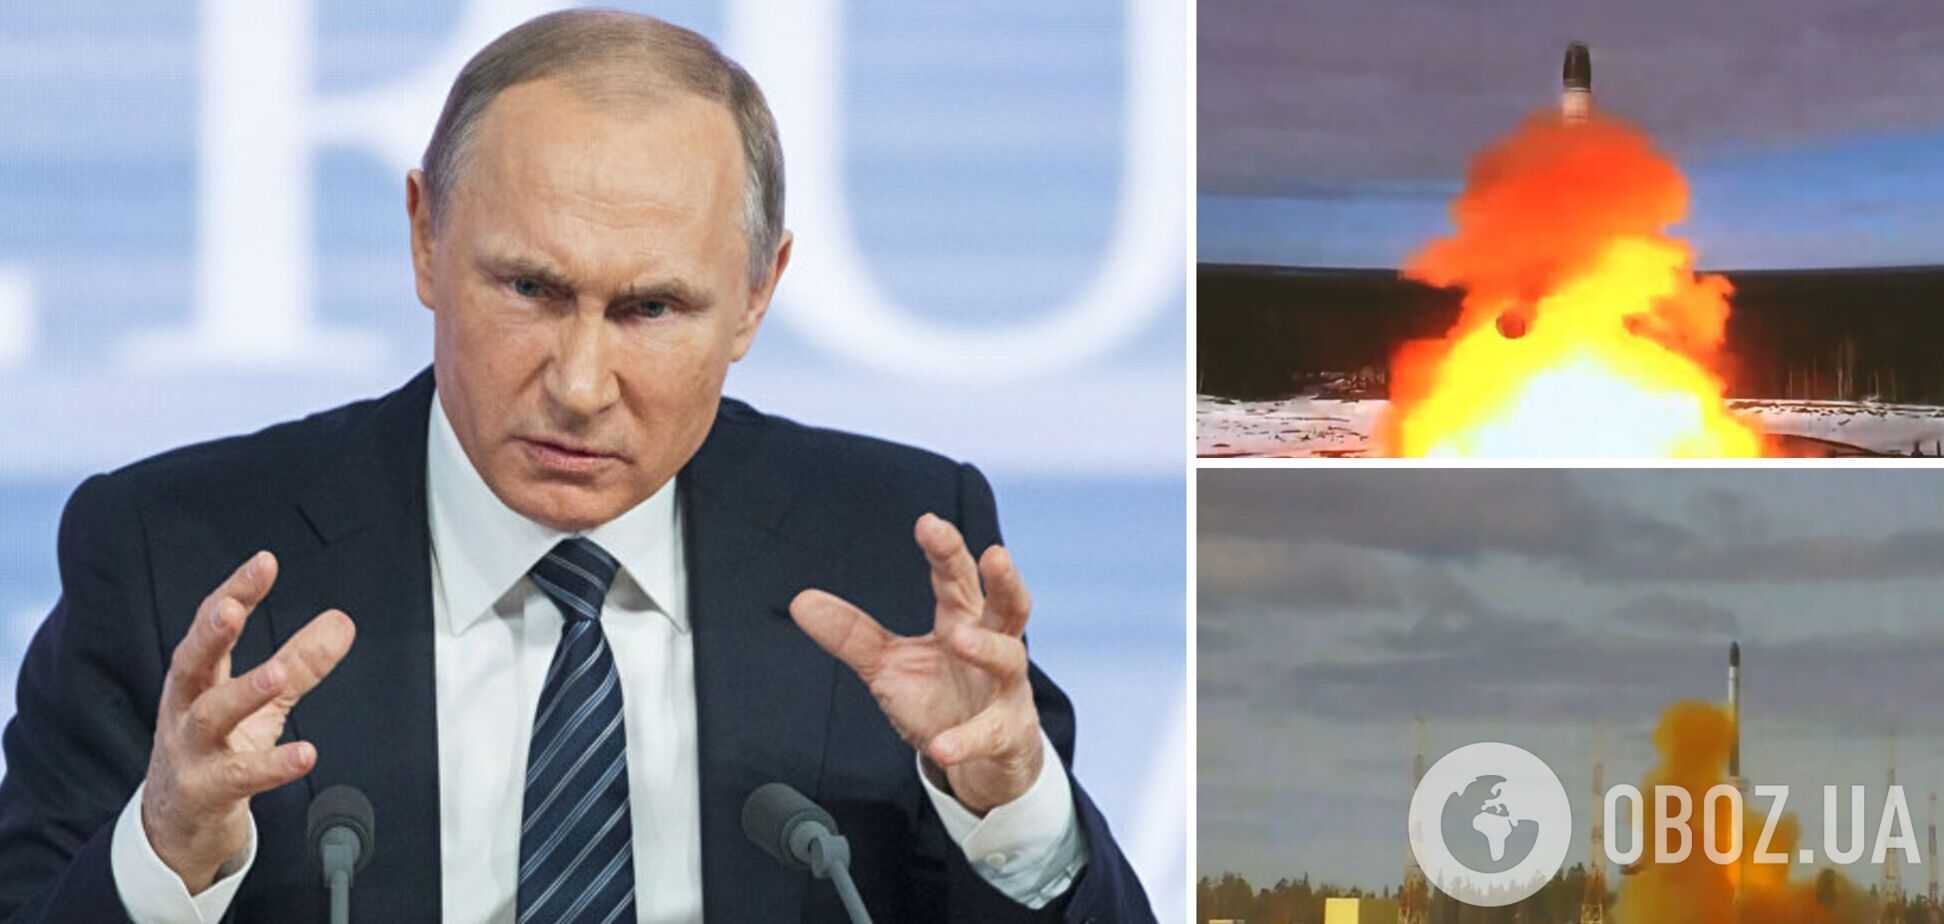 Военное унижение в Украине может заставить Путина пойти на крайние меры – The Economist